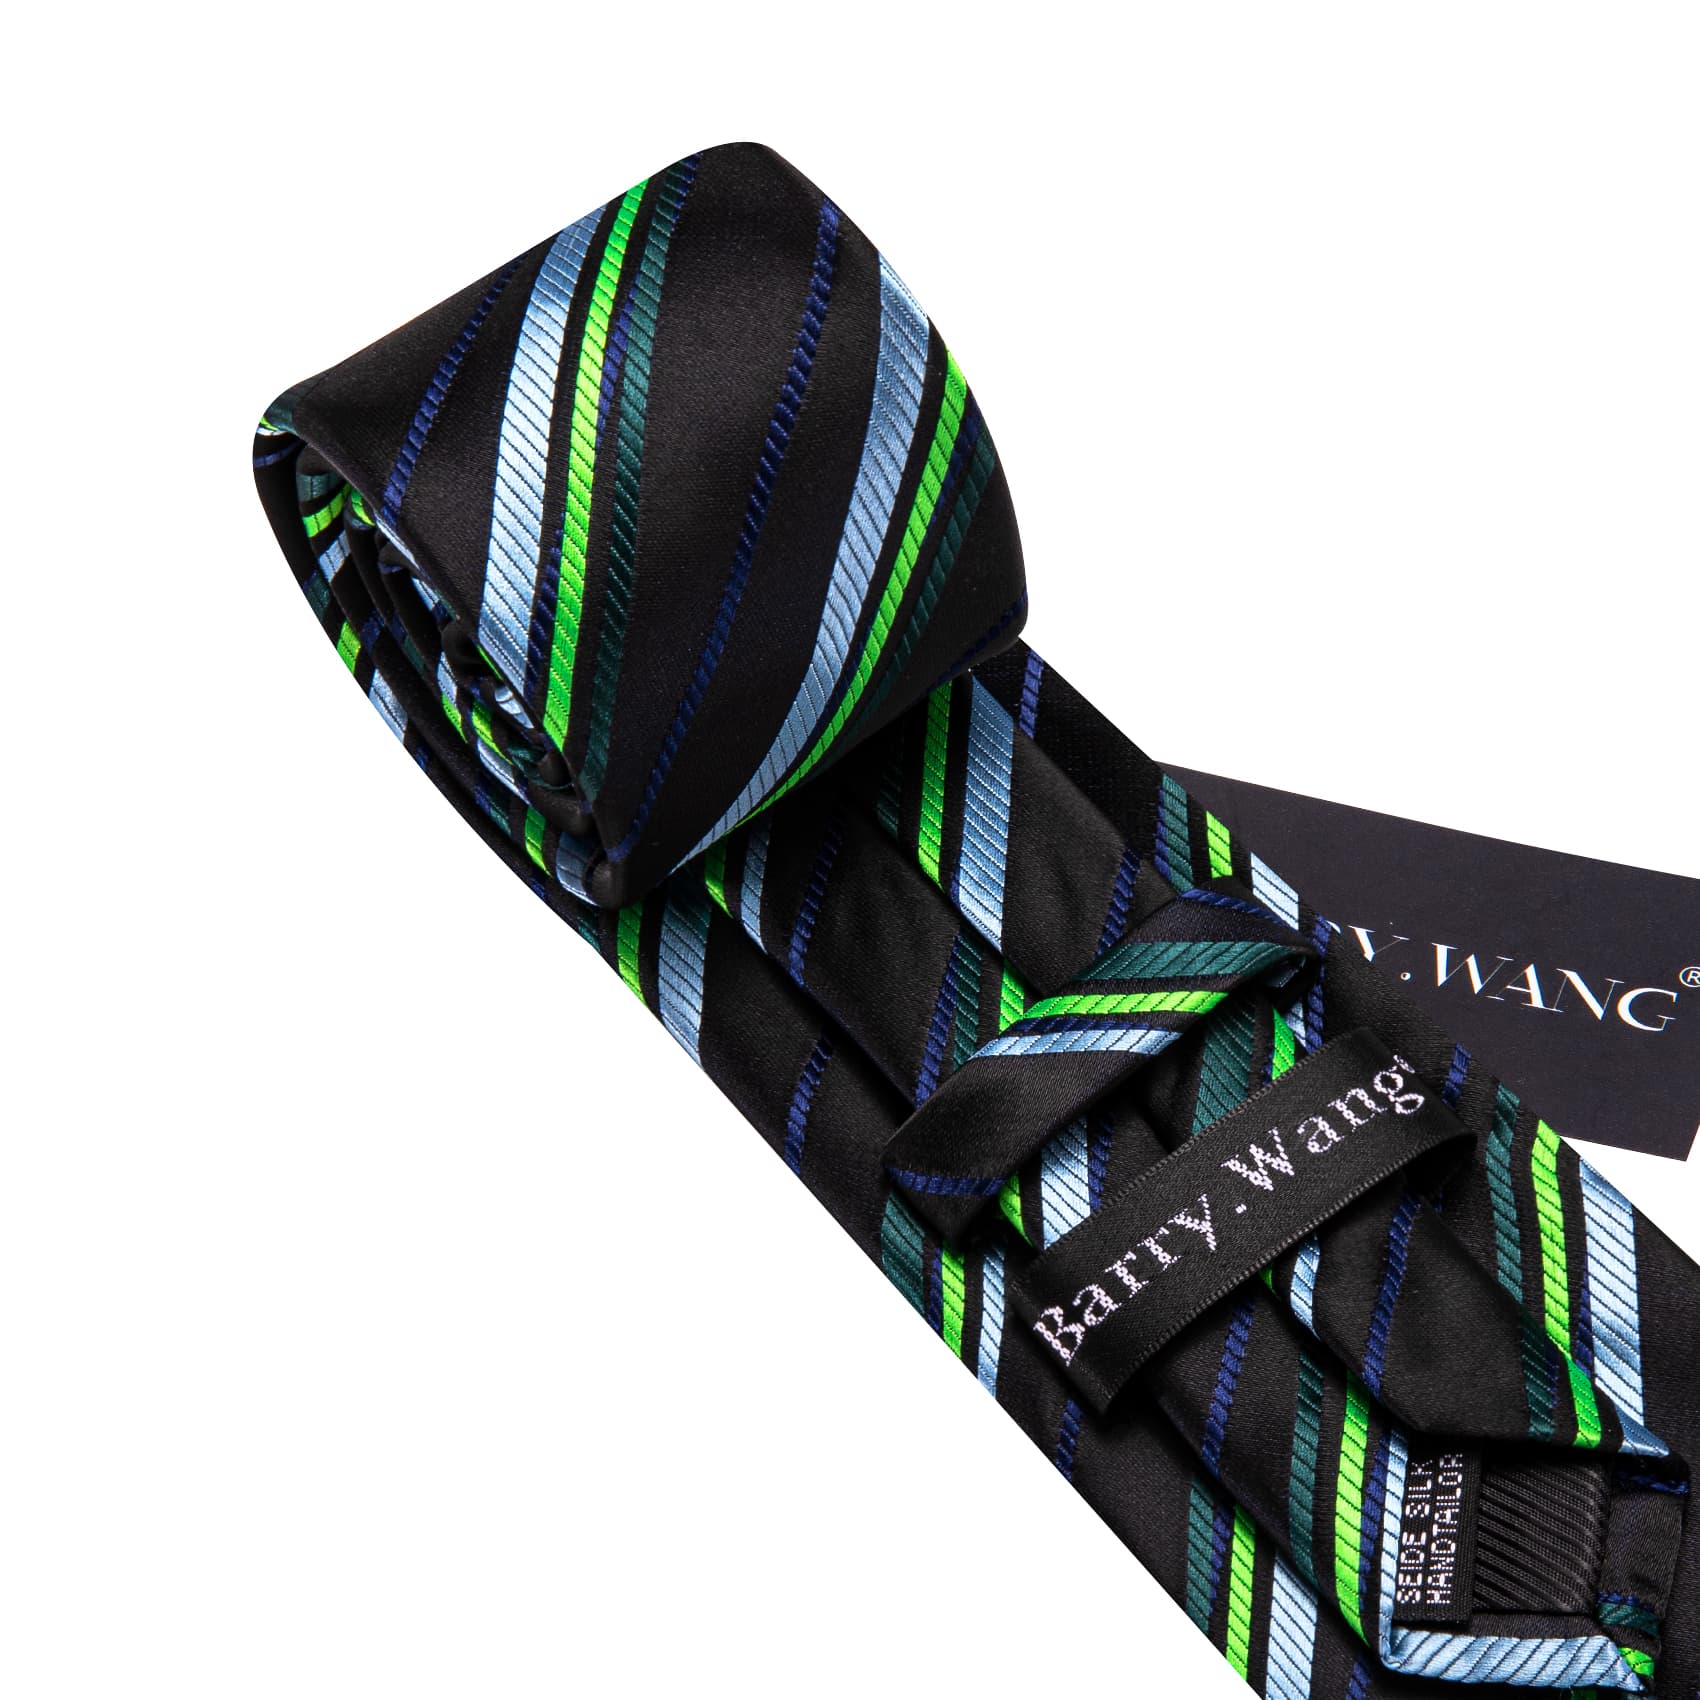 Tie Black Green Blue Checkered Necktie Hanky Cufflinks Set